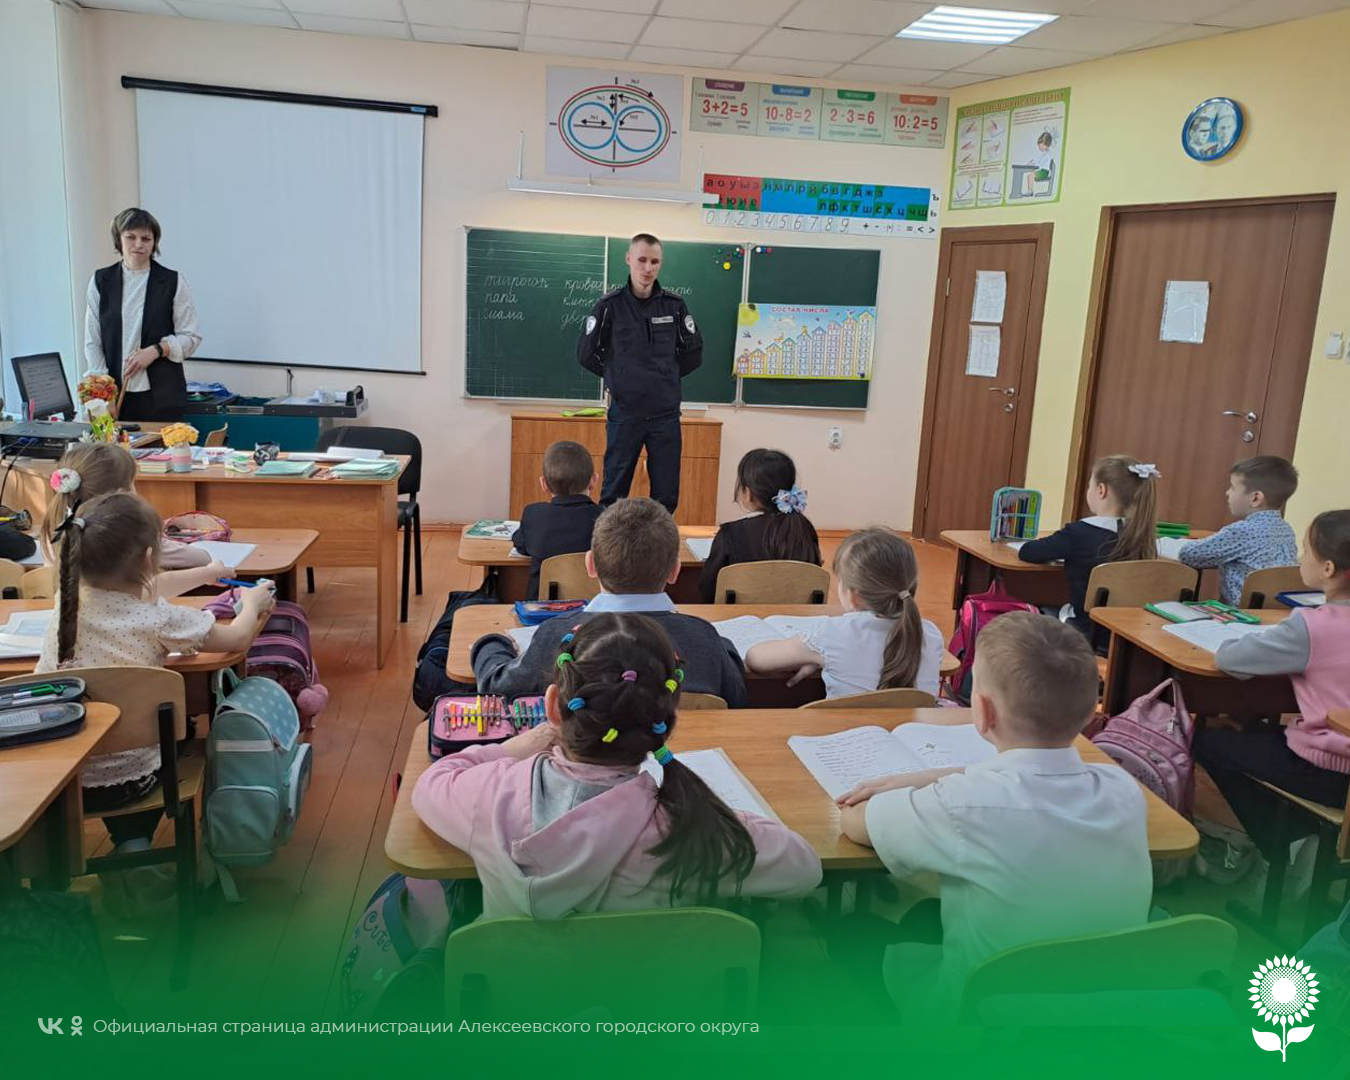 Сотрудник Госавтоинспекции ОМВД России по Алексеевскому городскому округу посетил детский сад и школу в селе Иловка